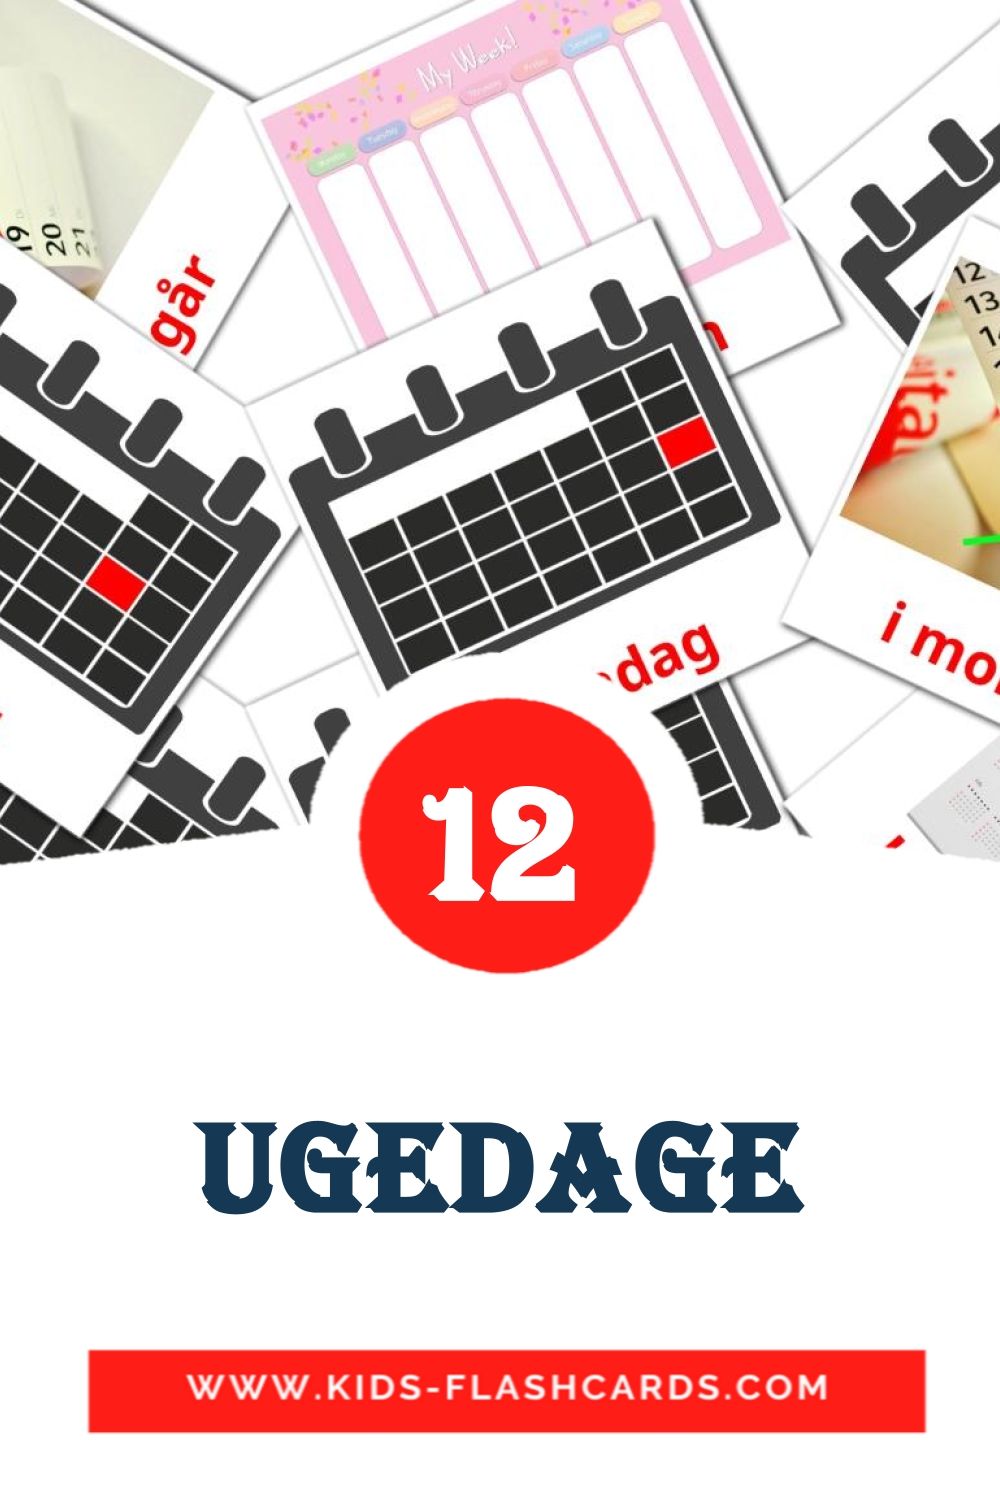 12 Cartões com Imagens de Ugedage para Jardim de Infância em dansk